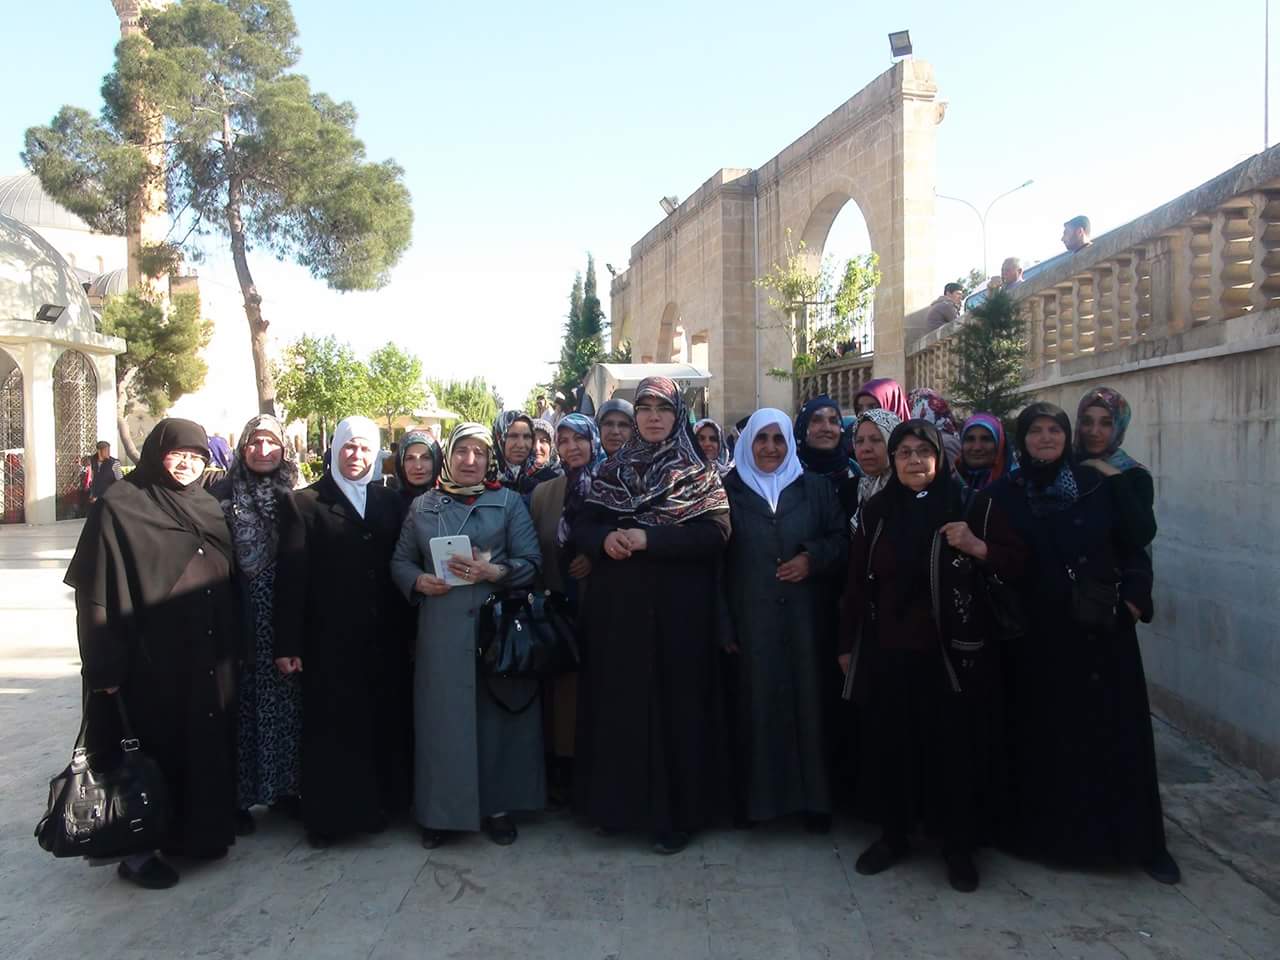 Kadın Meclisi “Peygamberler Şehri Urfa’ya” Gezi Düzenledi